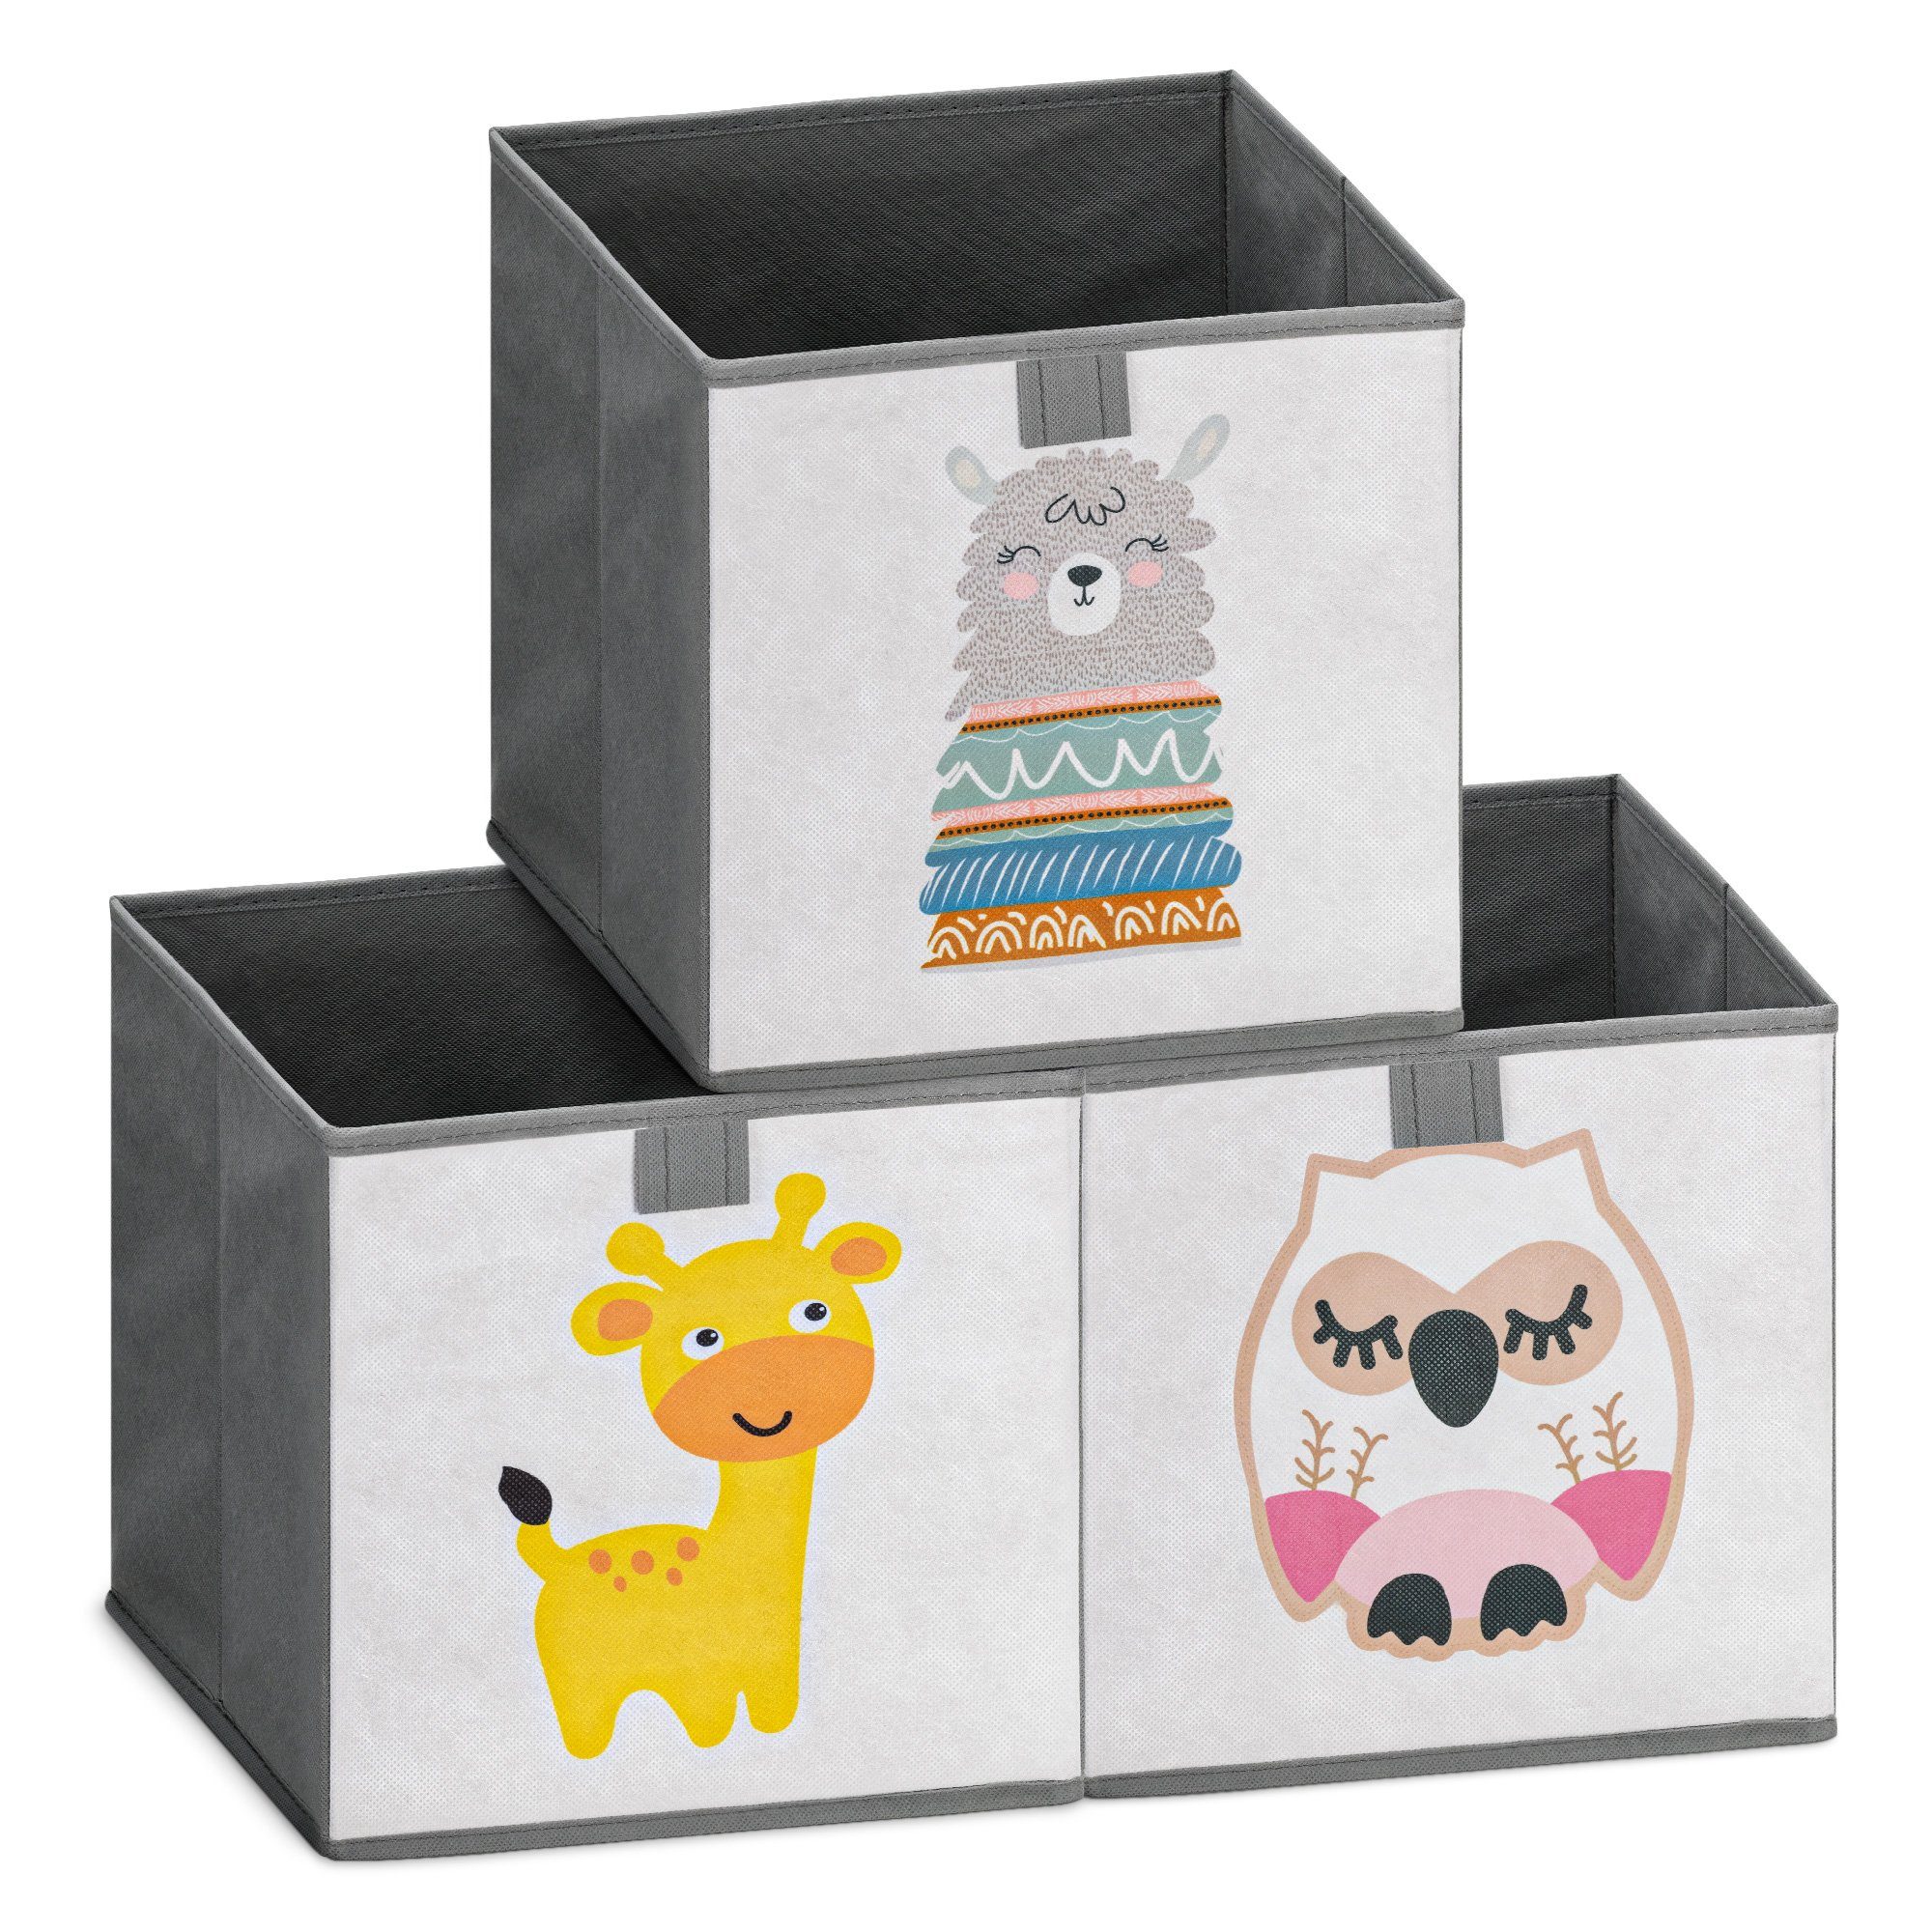 Fuchs Faltbox Kinder für Spielzeugaufbewahrung Aufbewahrungsbox Kinder Spielzeugkiste Filzkorb für Kinderzimmer Ordnungsbox mit Tiermuster 33 x 33 x 33 cm